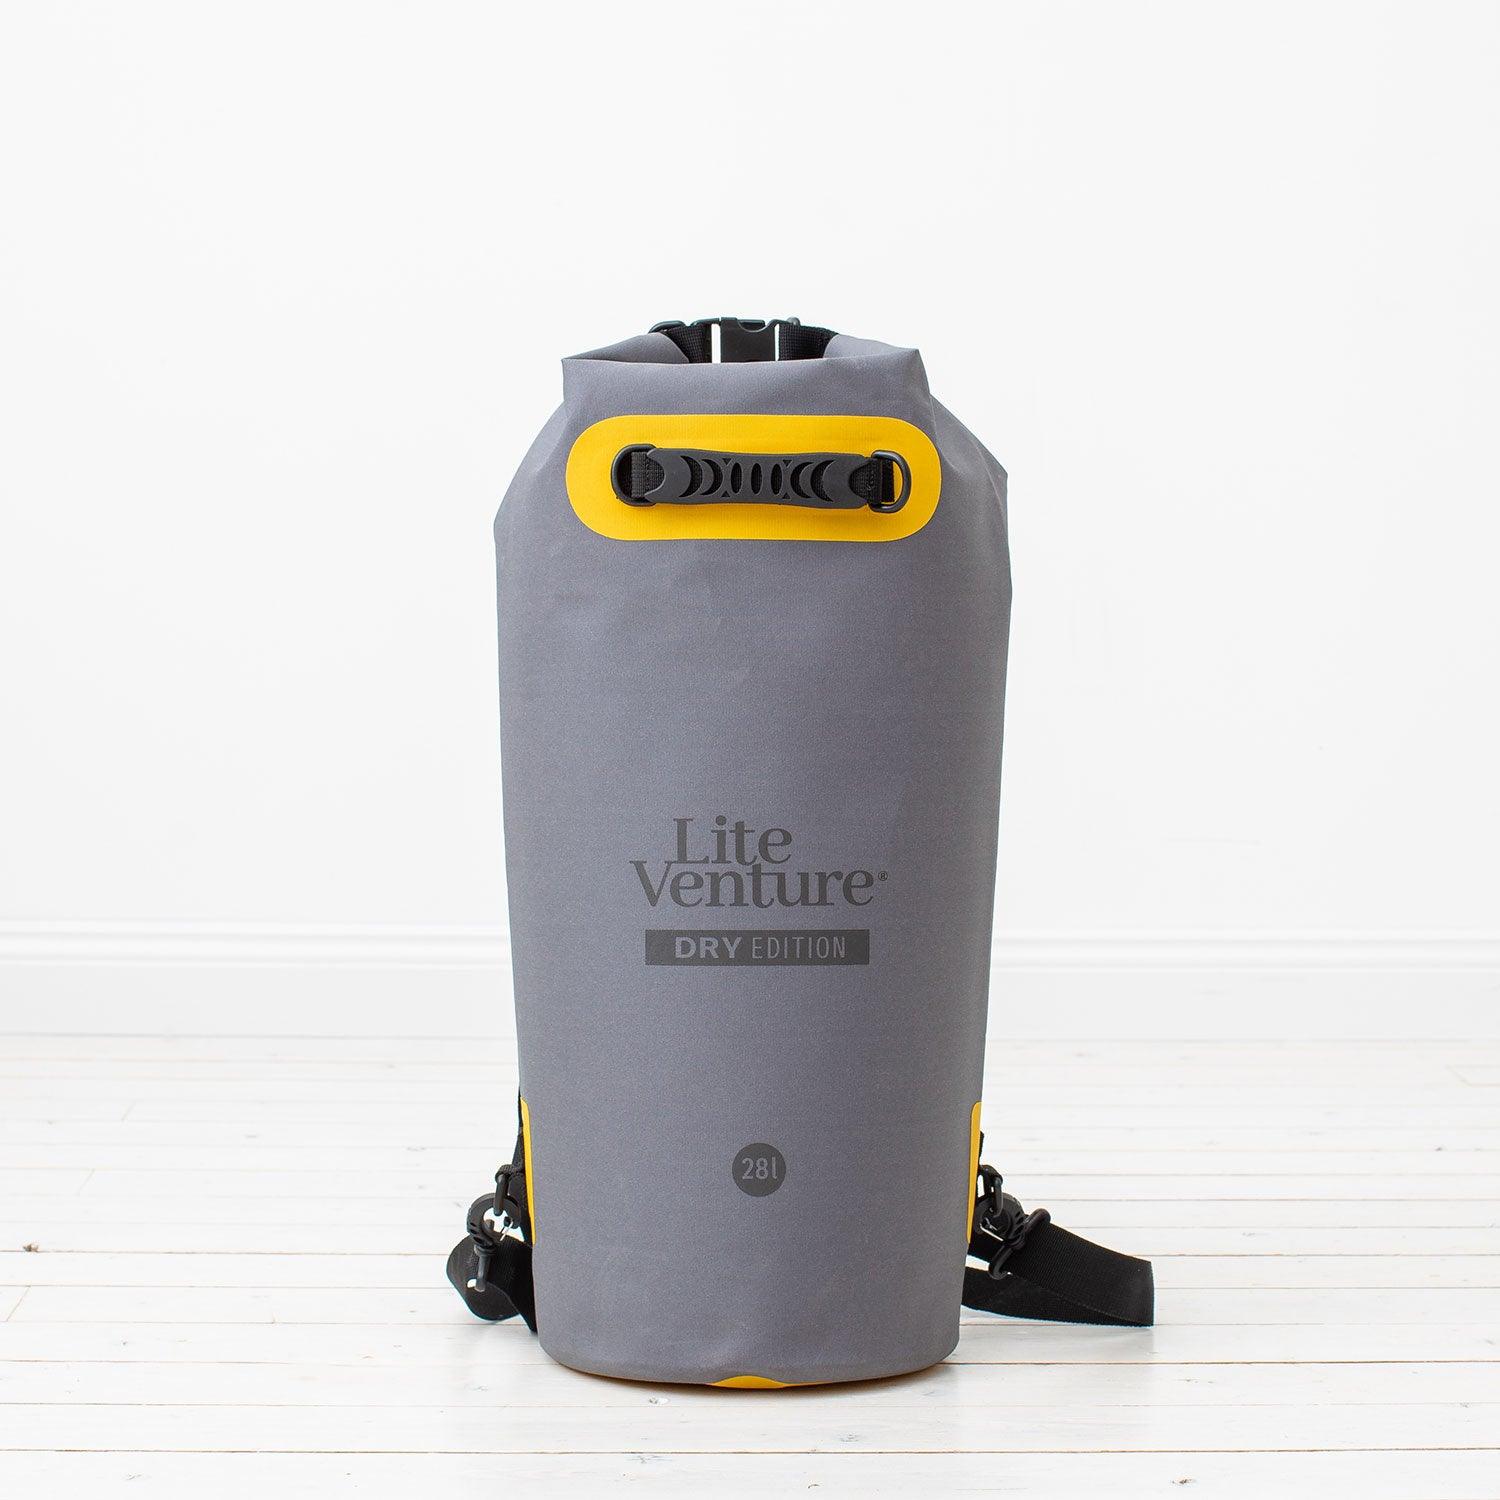 Produktbild von zubehör " Packsack / Dry Bag-Dry Edition Trockensack-28 Liter " der Marke Lite Venture für 35.95 €. Erhältlich online bei Lite Venture ( www.liteventure.de )